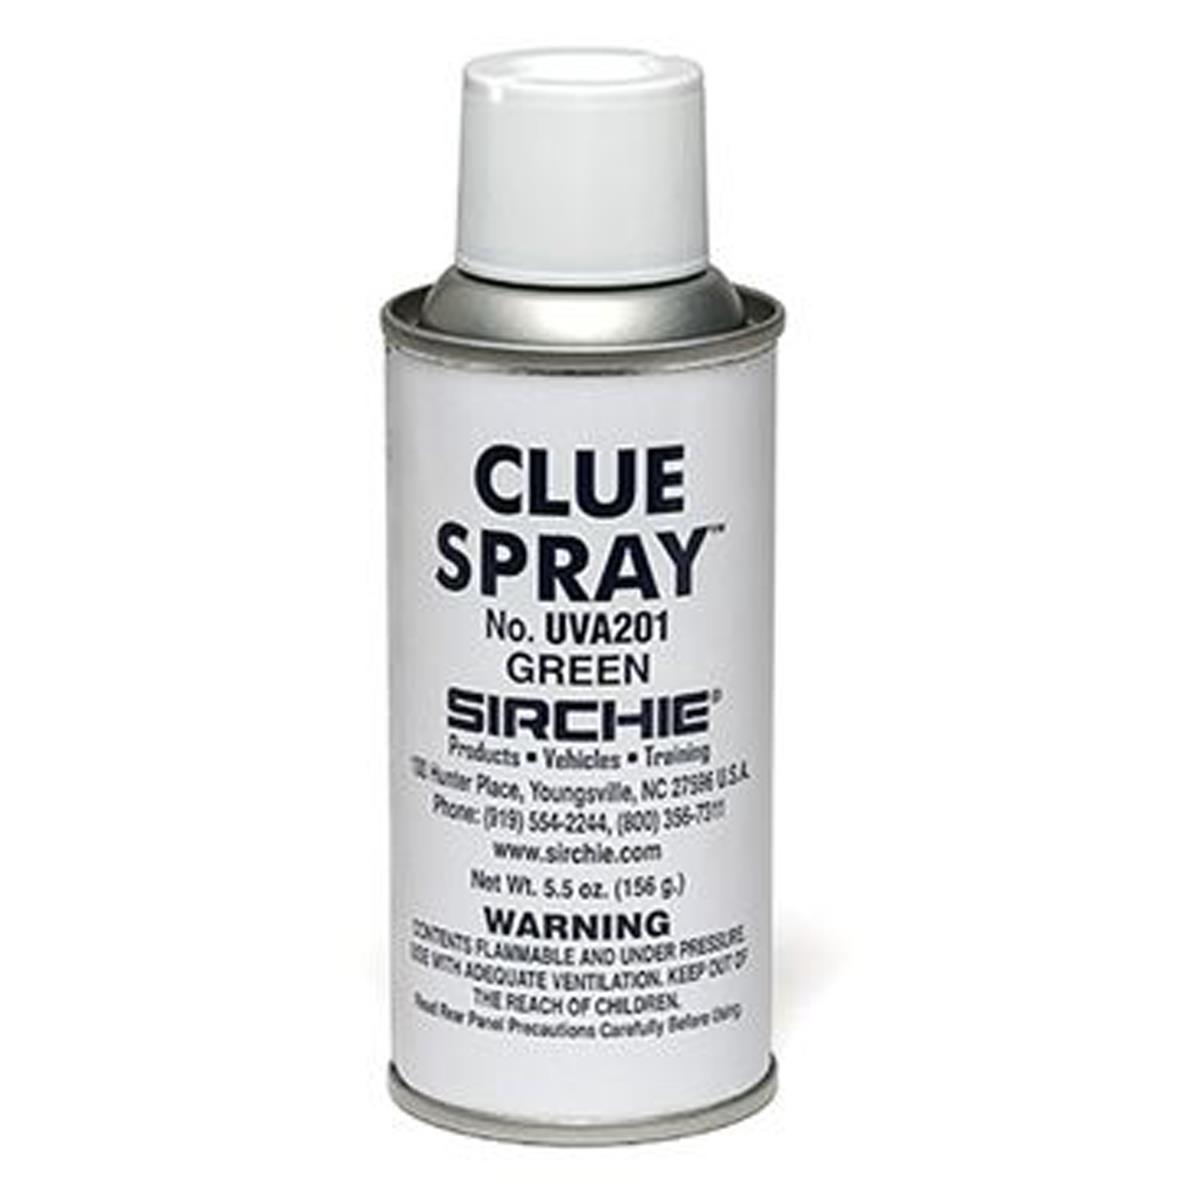 Image of Sirchie 6oz Clue Spray Fluorescent Powder